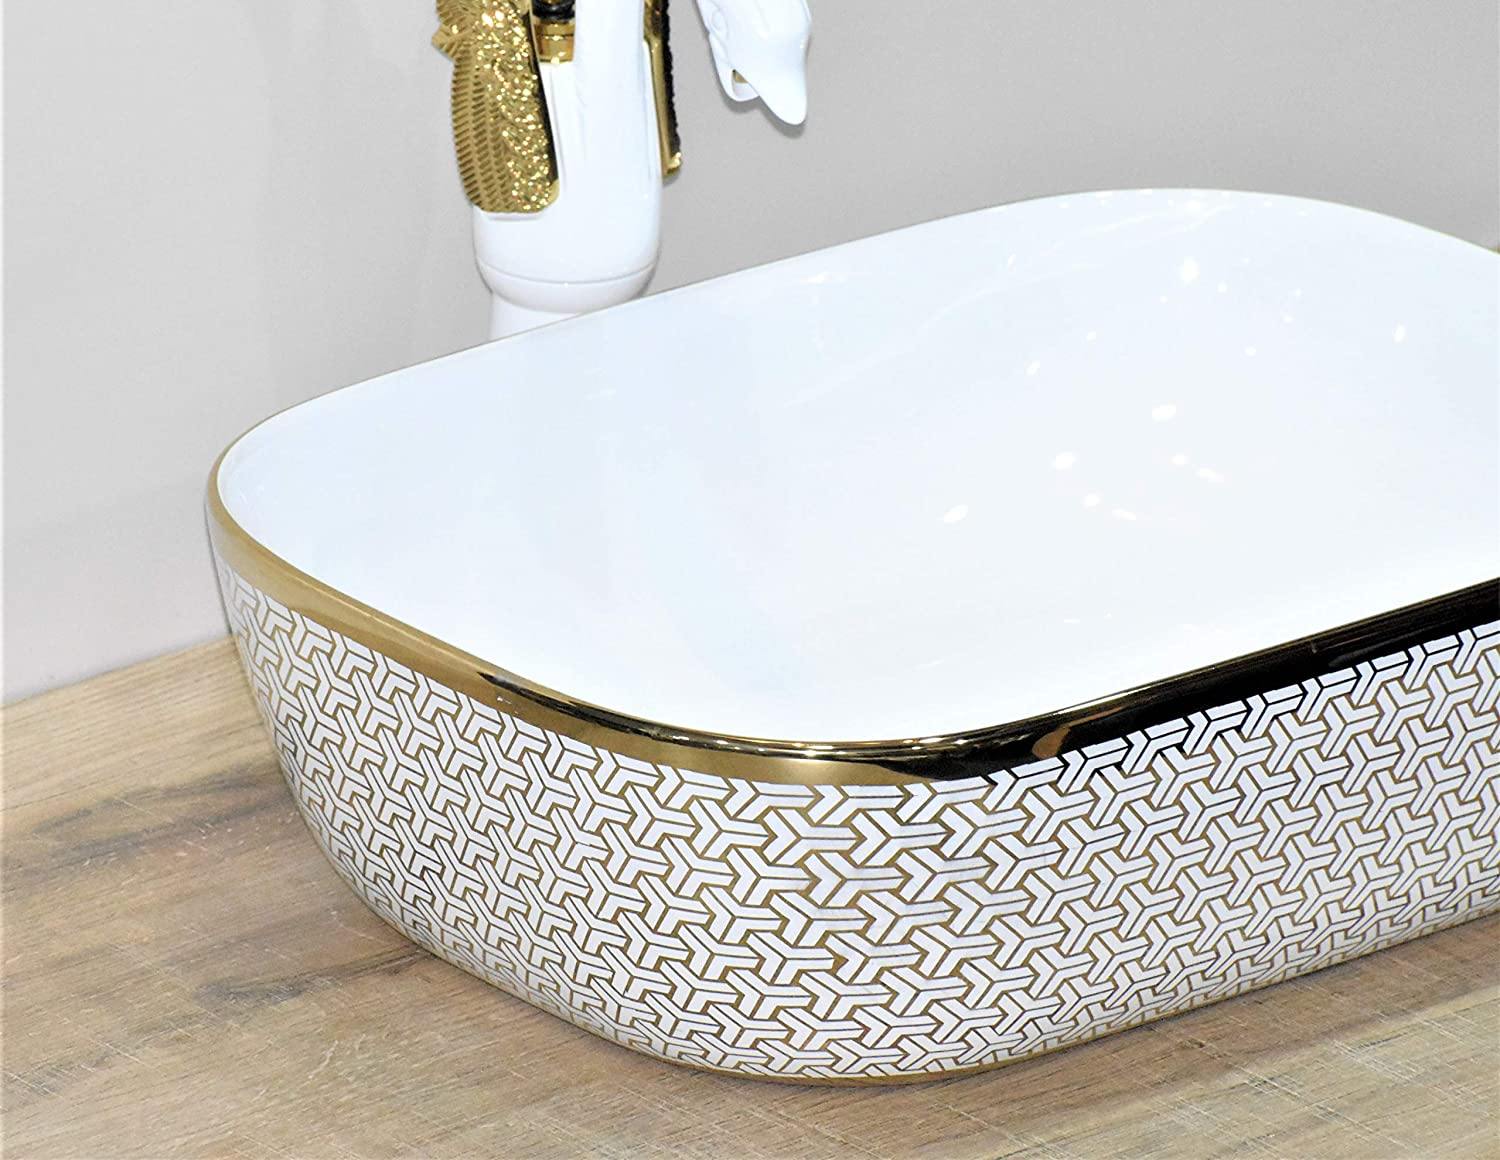 Designer Ceramic Wash Basin Vessel Sink Over or Above Counter Top Wash Basin for Bathroom Rectangle Shape Golden White 45.5 X 32 X 13.5 cm Only Wash Basin - Bath Outlet